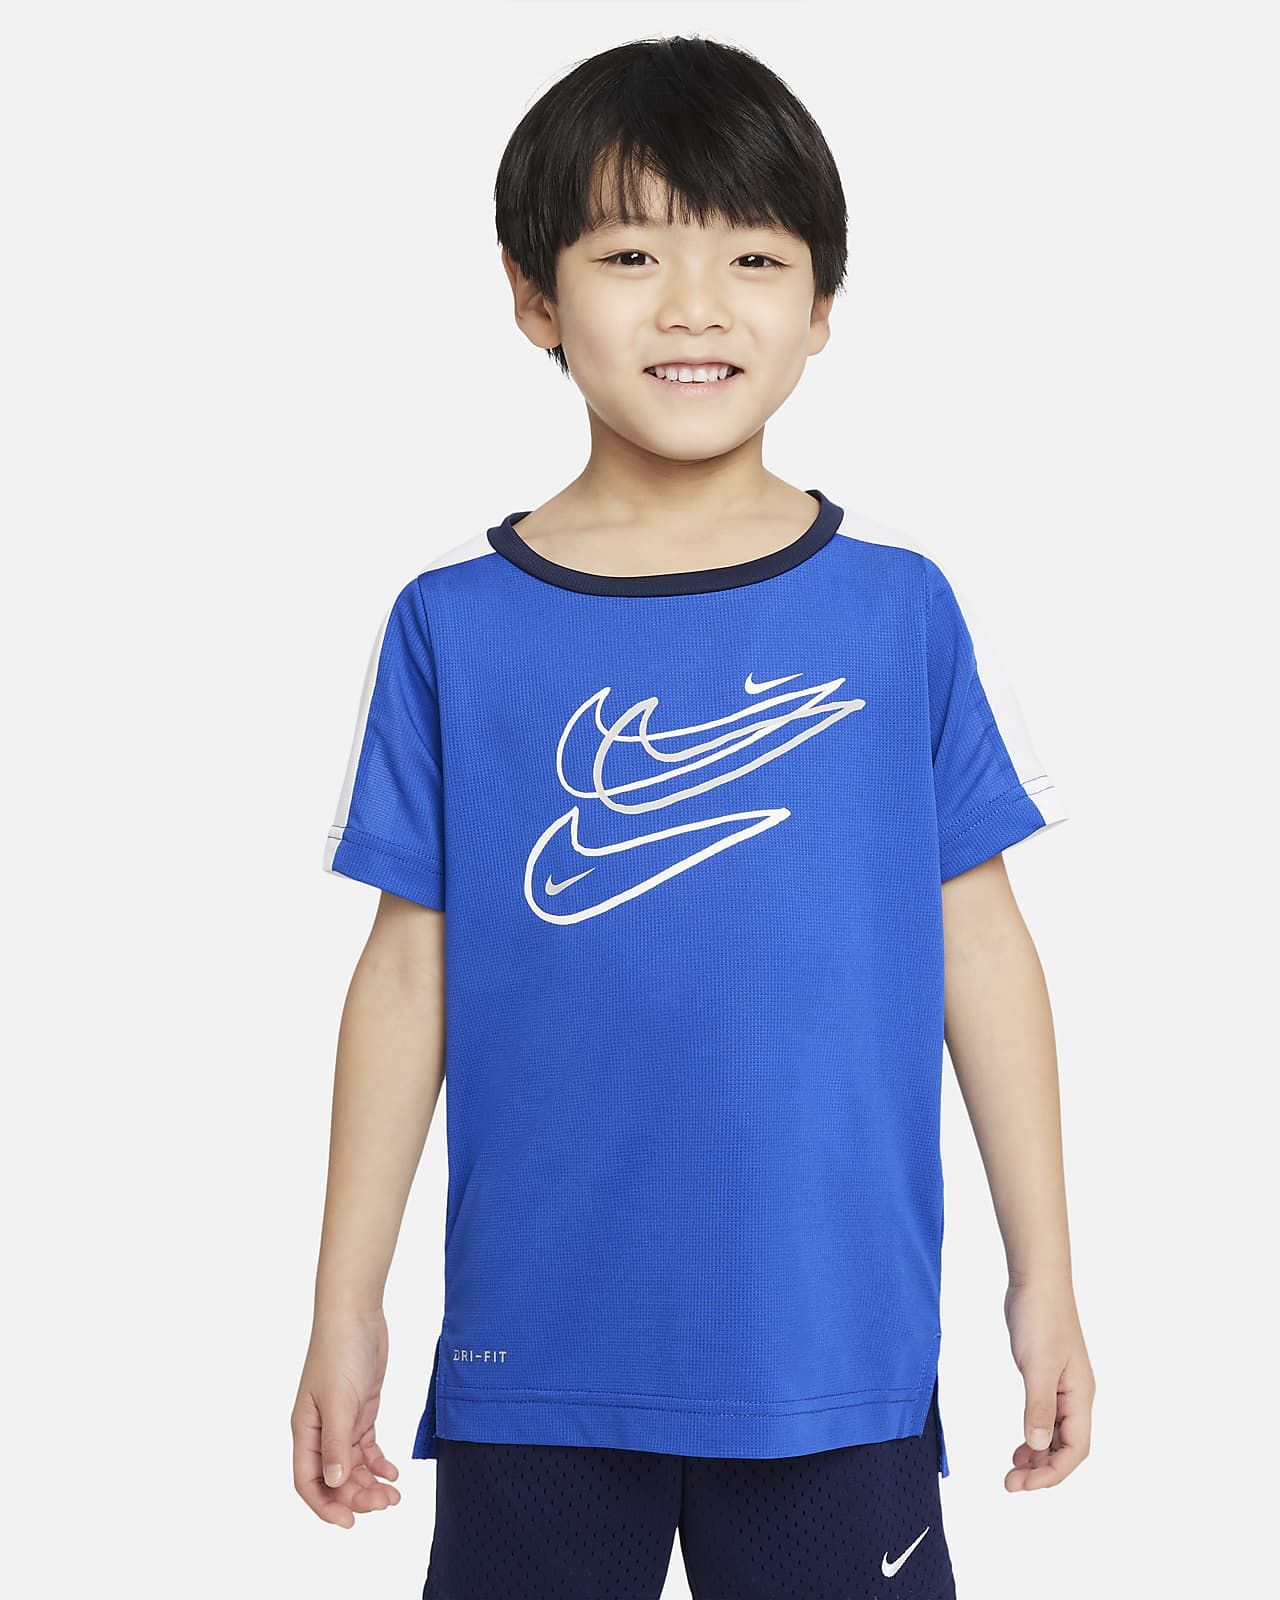 Nike Dri-FIT Little Kids' T-Shirt. Nike.com | Nike (US)